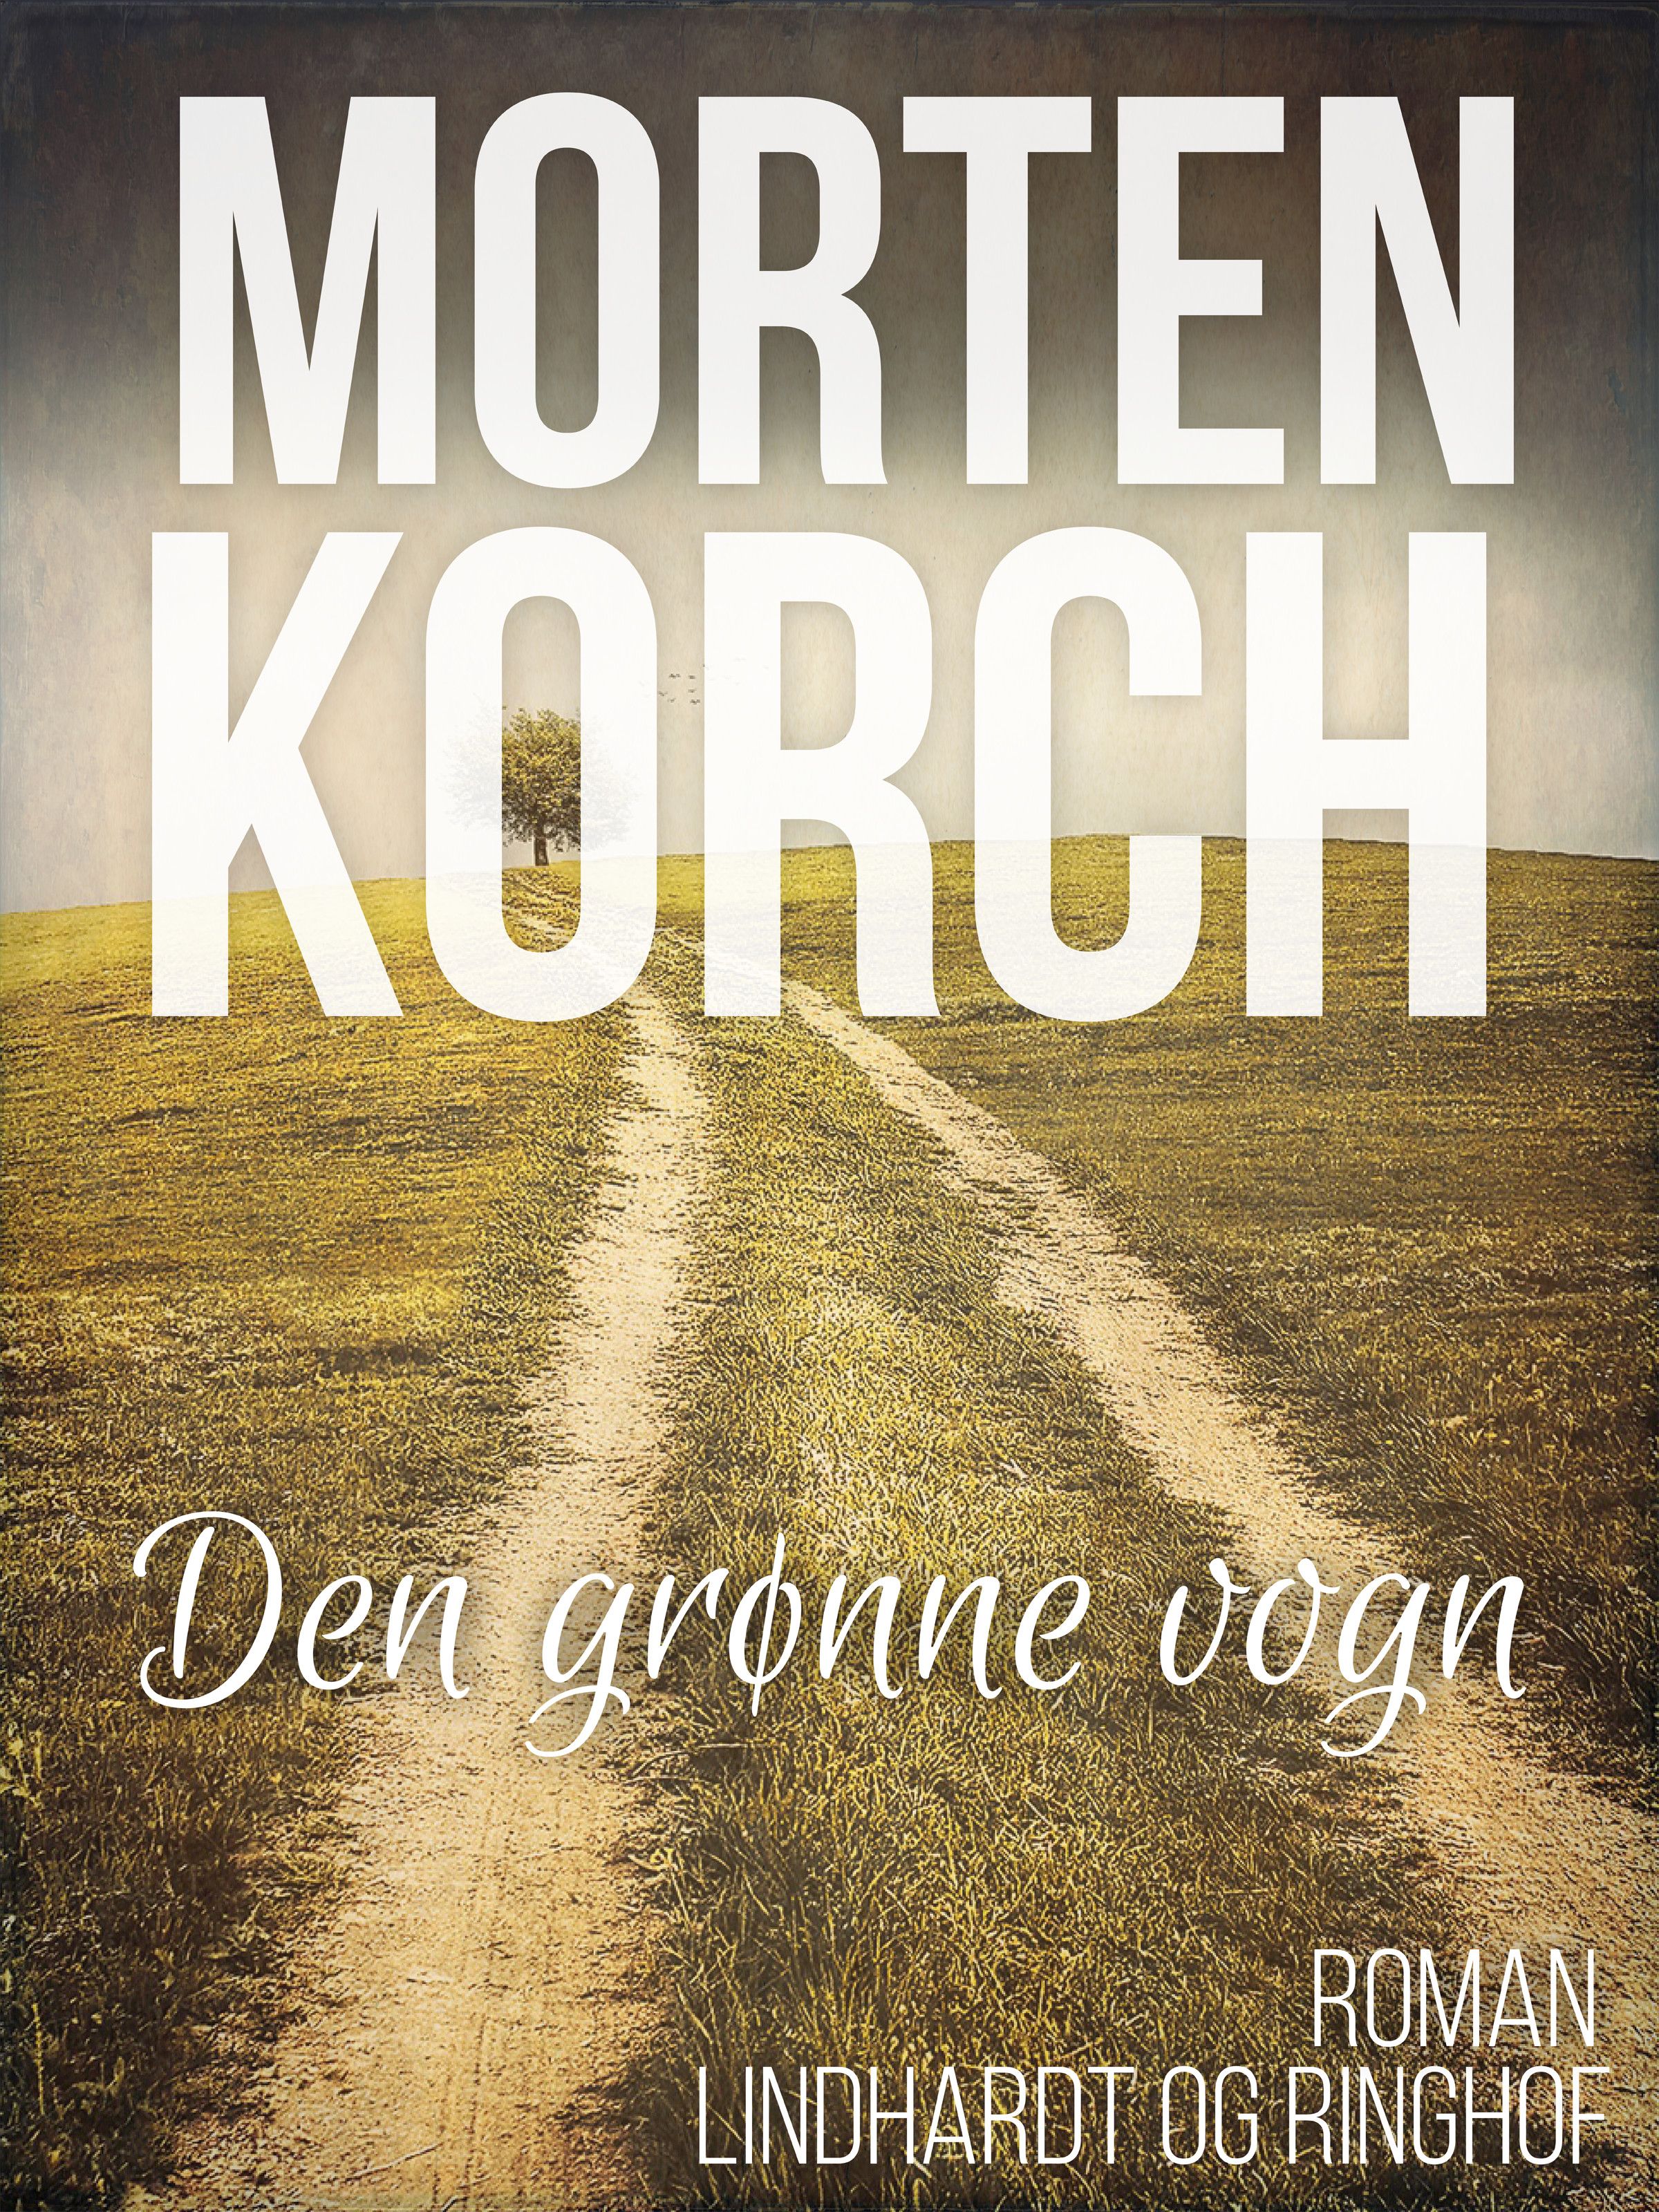 Den grønne vogn, ljudbok av Morten Korch